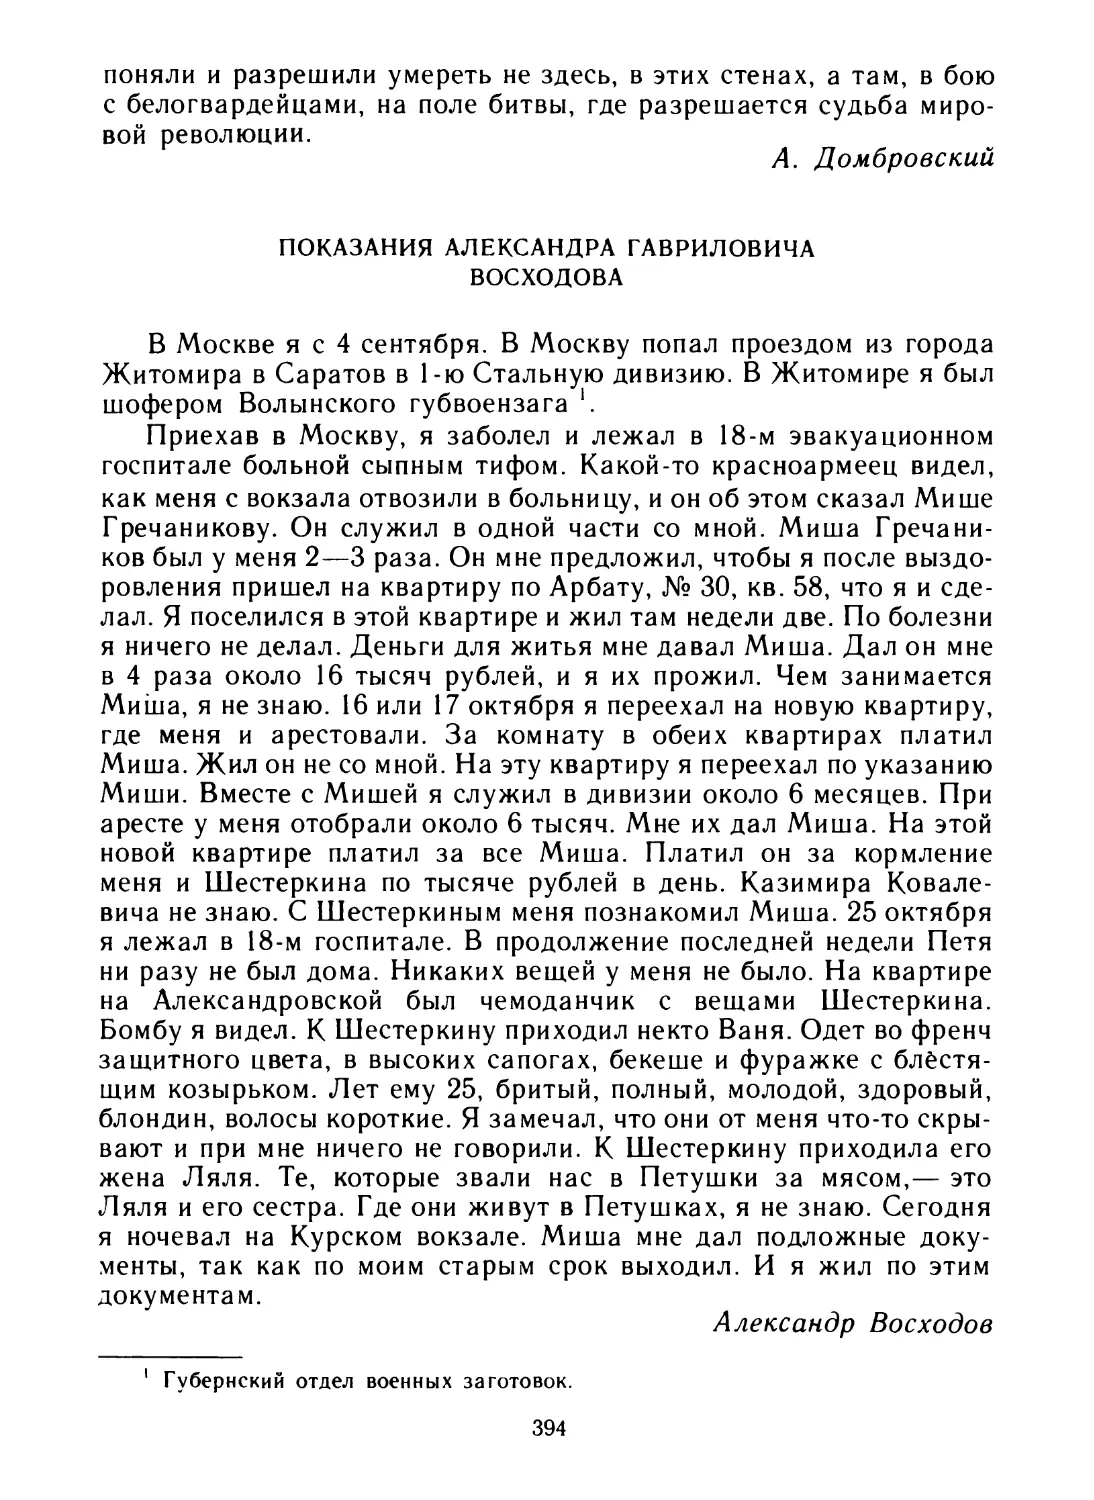 Показания Александра Гавриловича Восходова